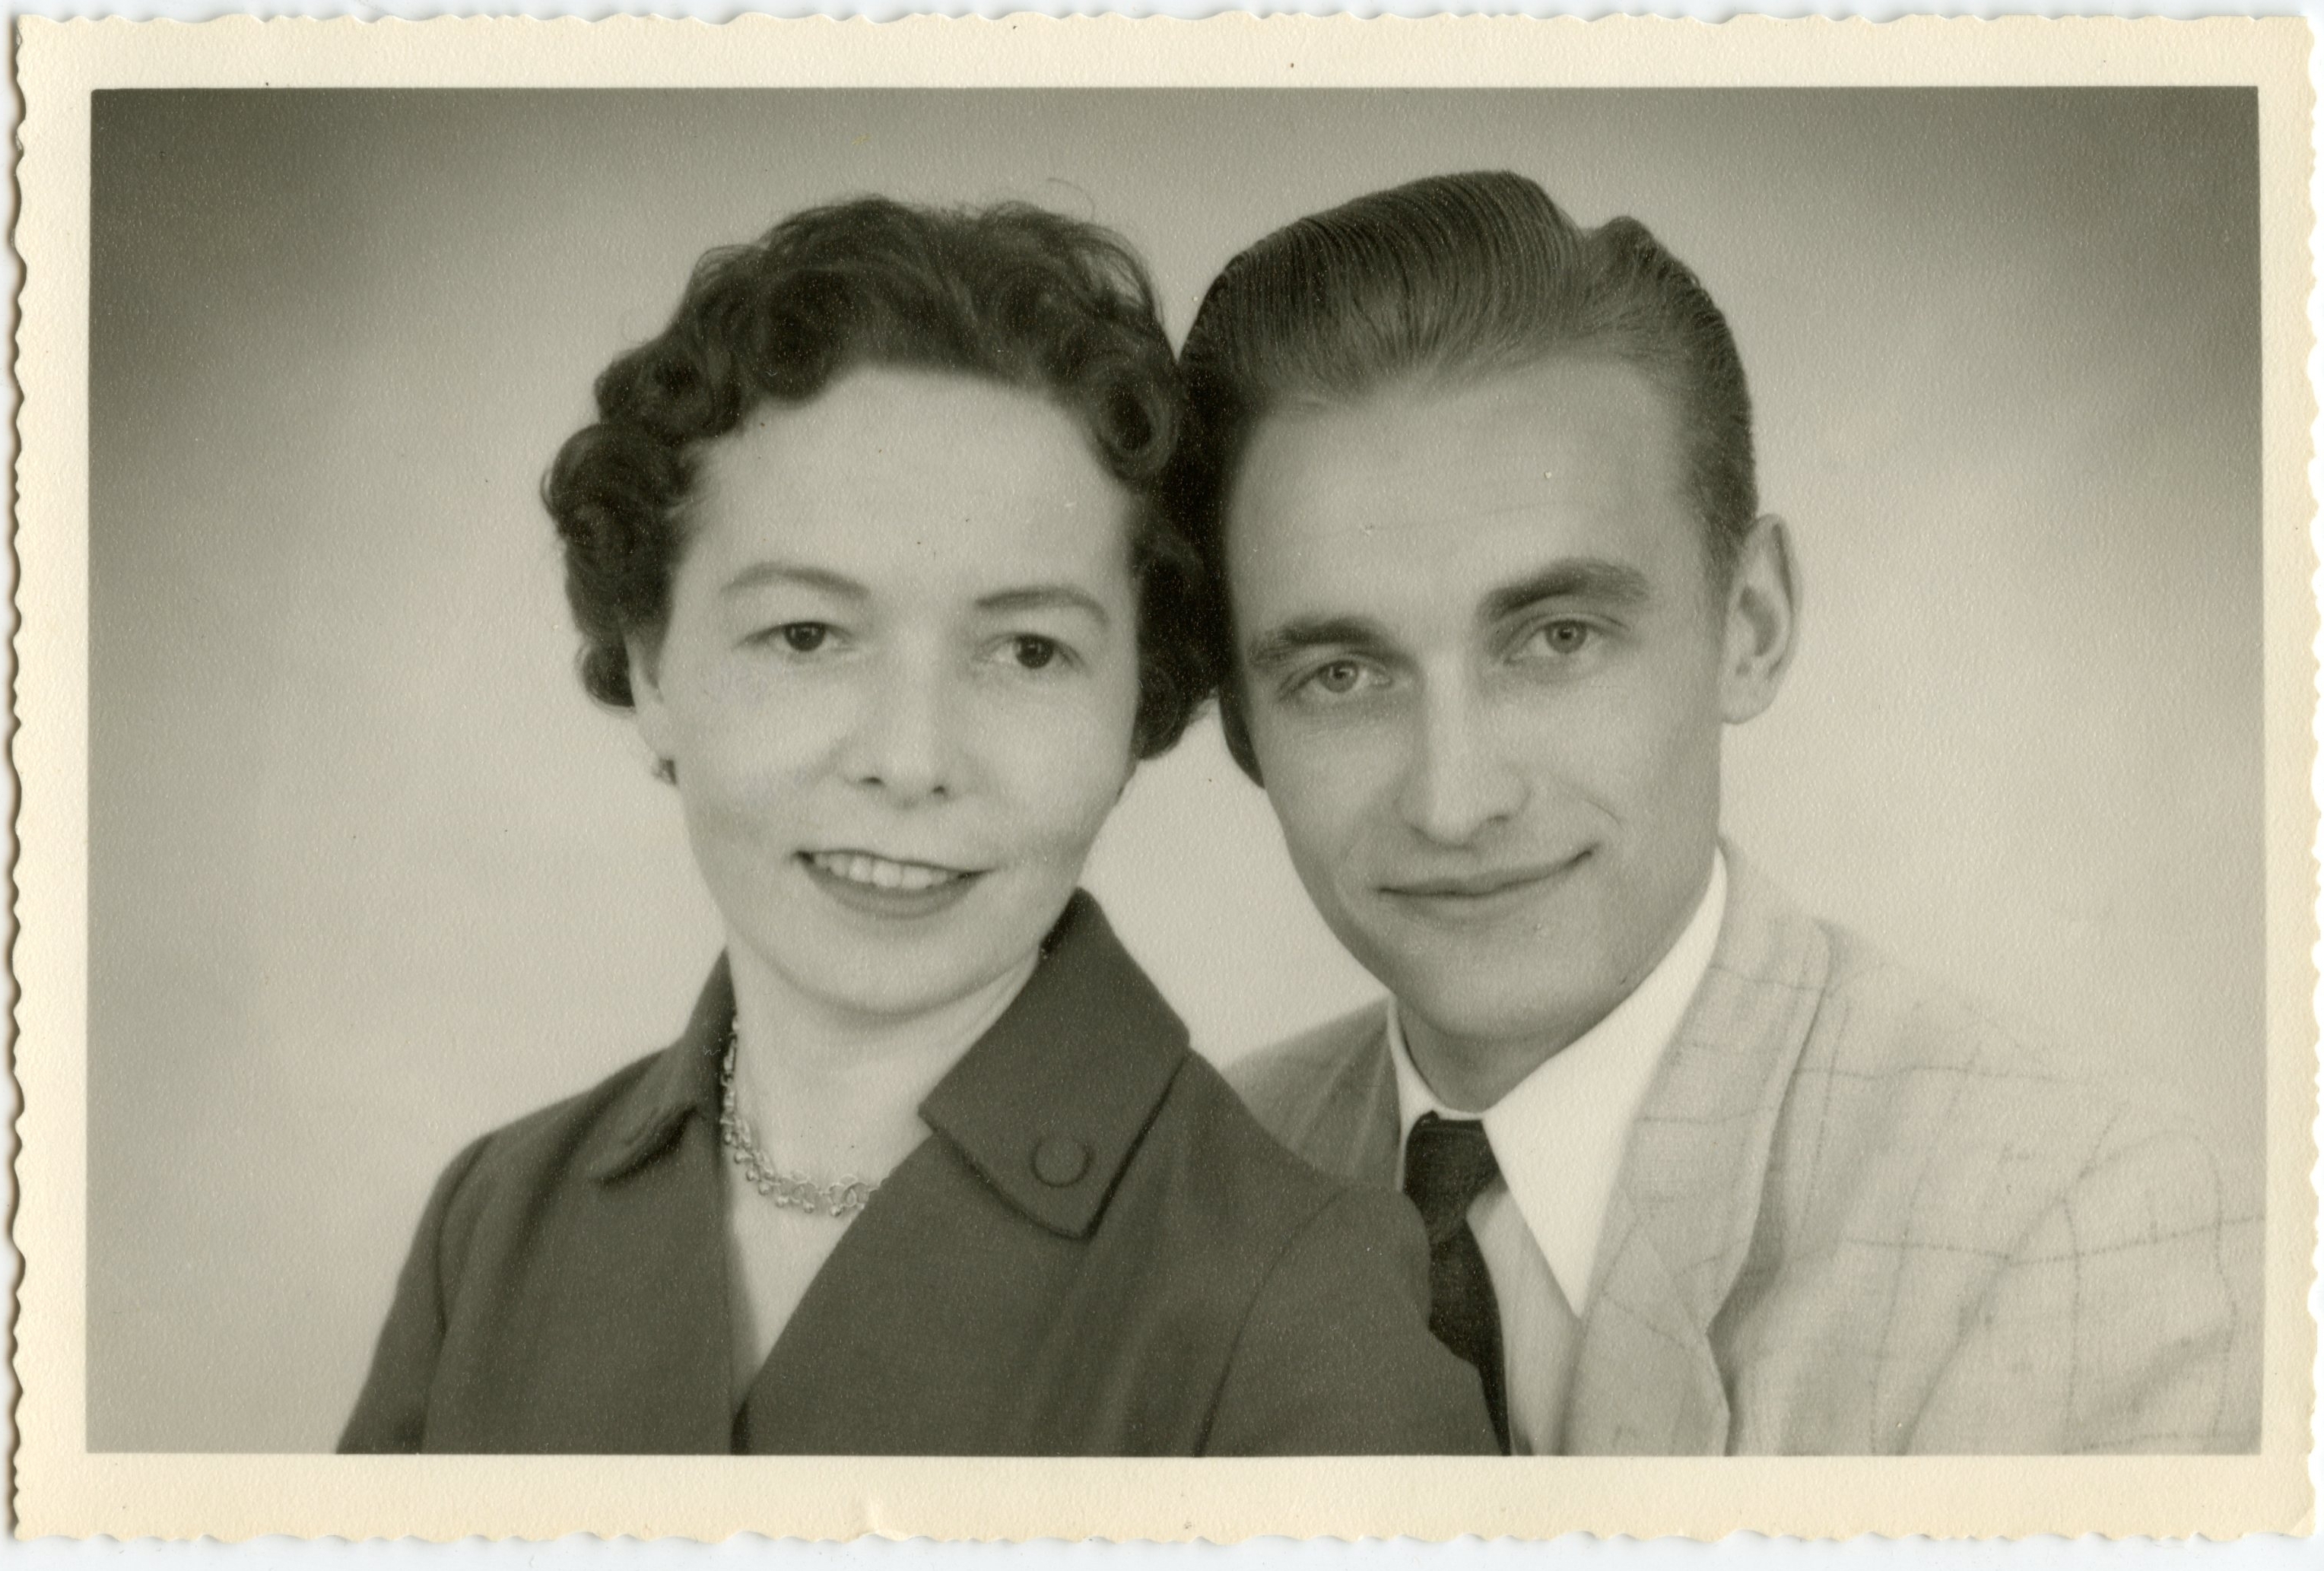 Heinrich & Helen Wittig, 1959